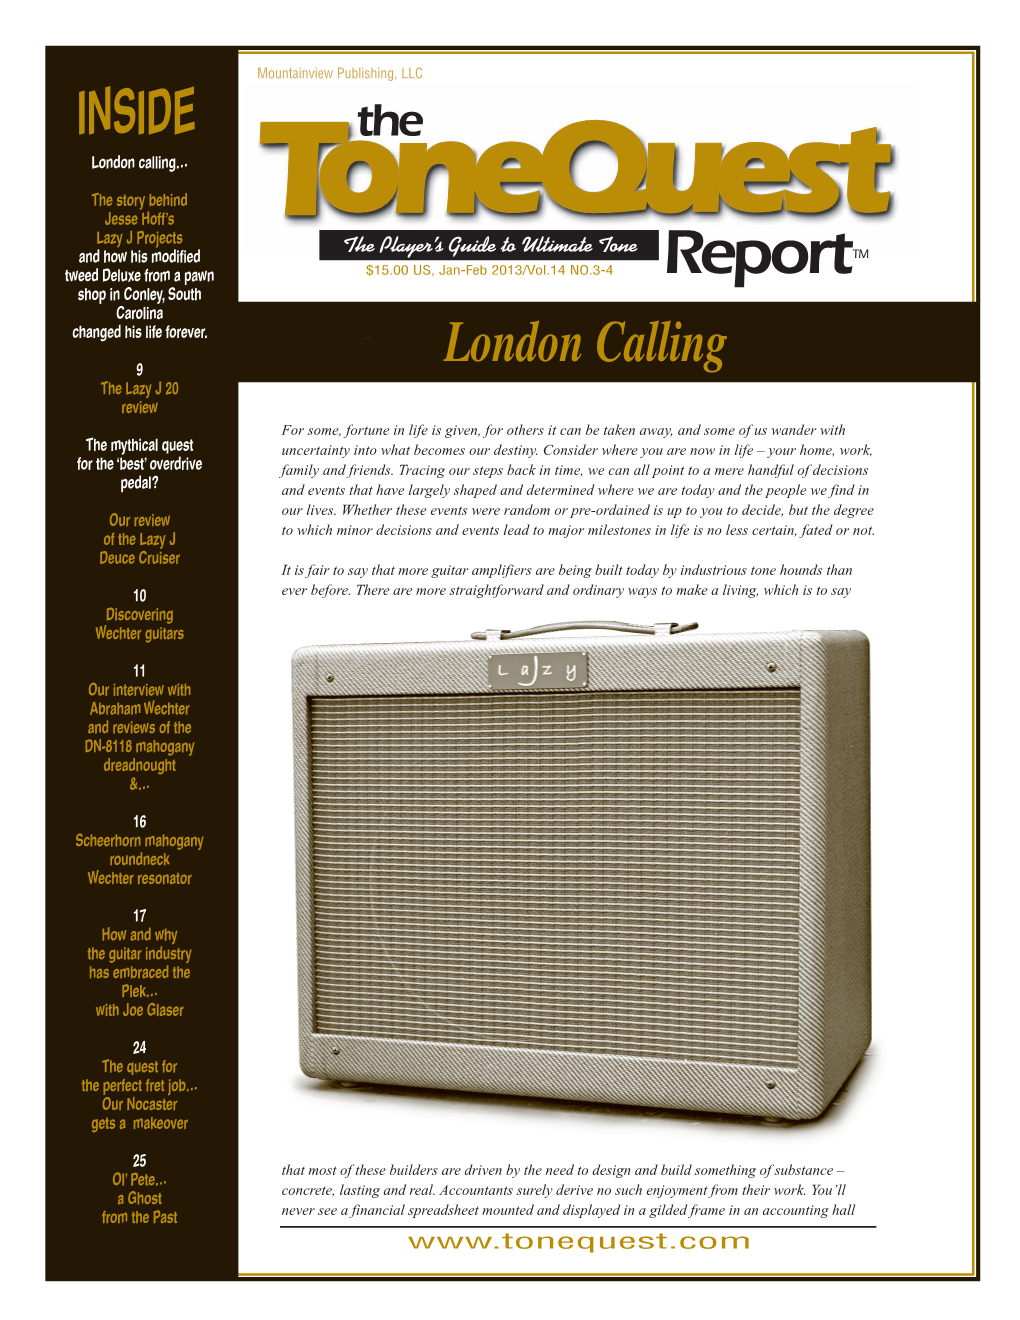 The Tonequest Report